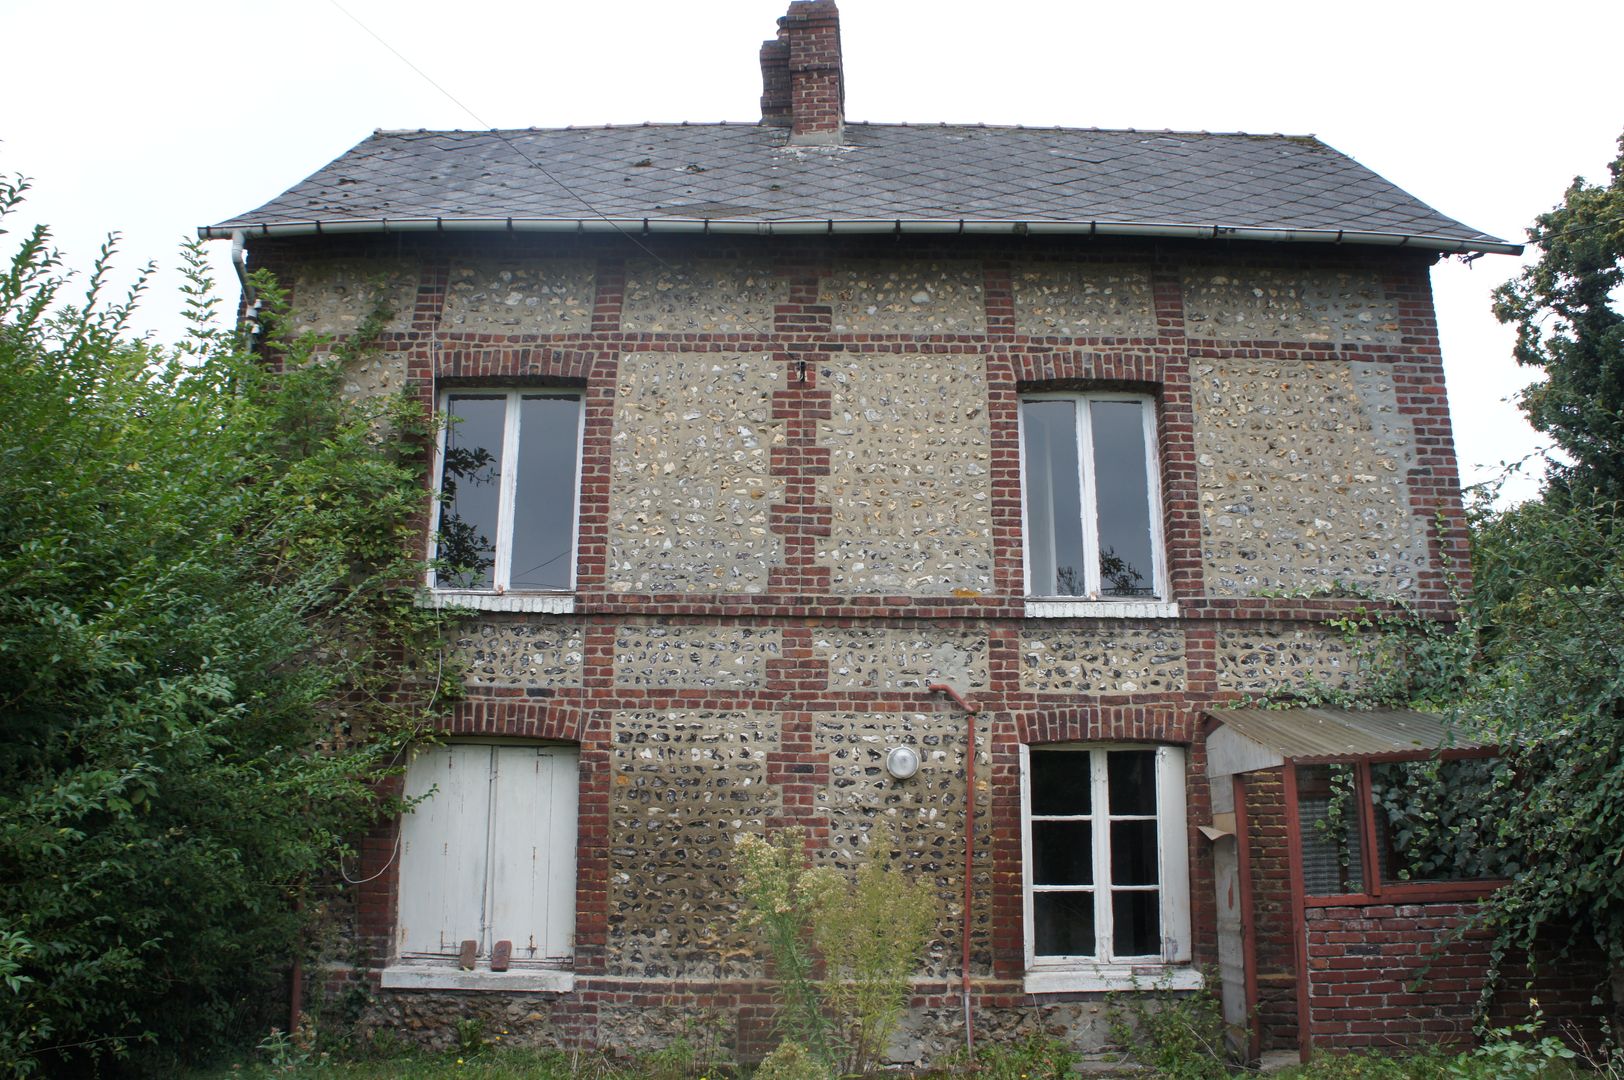 Maison privée B69, Mont-Saint-Aignan 2015, STUDIO ELC DESIGN STUDIO ELC DESIGN